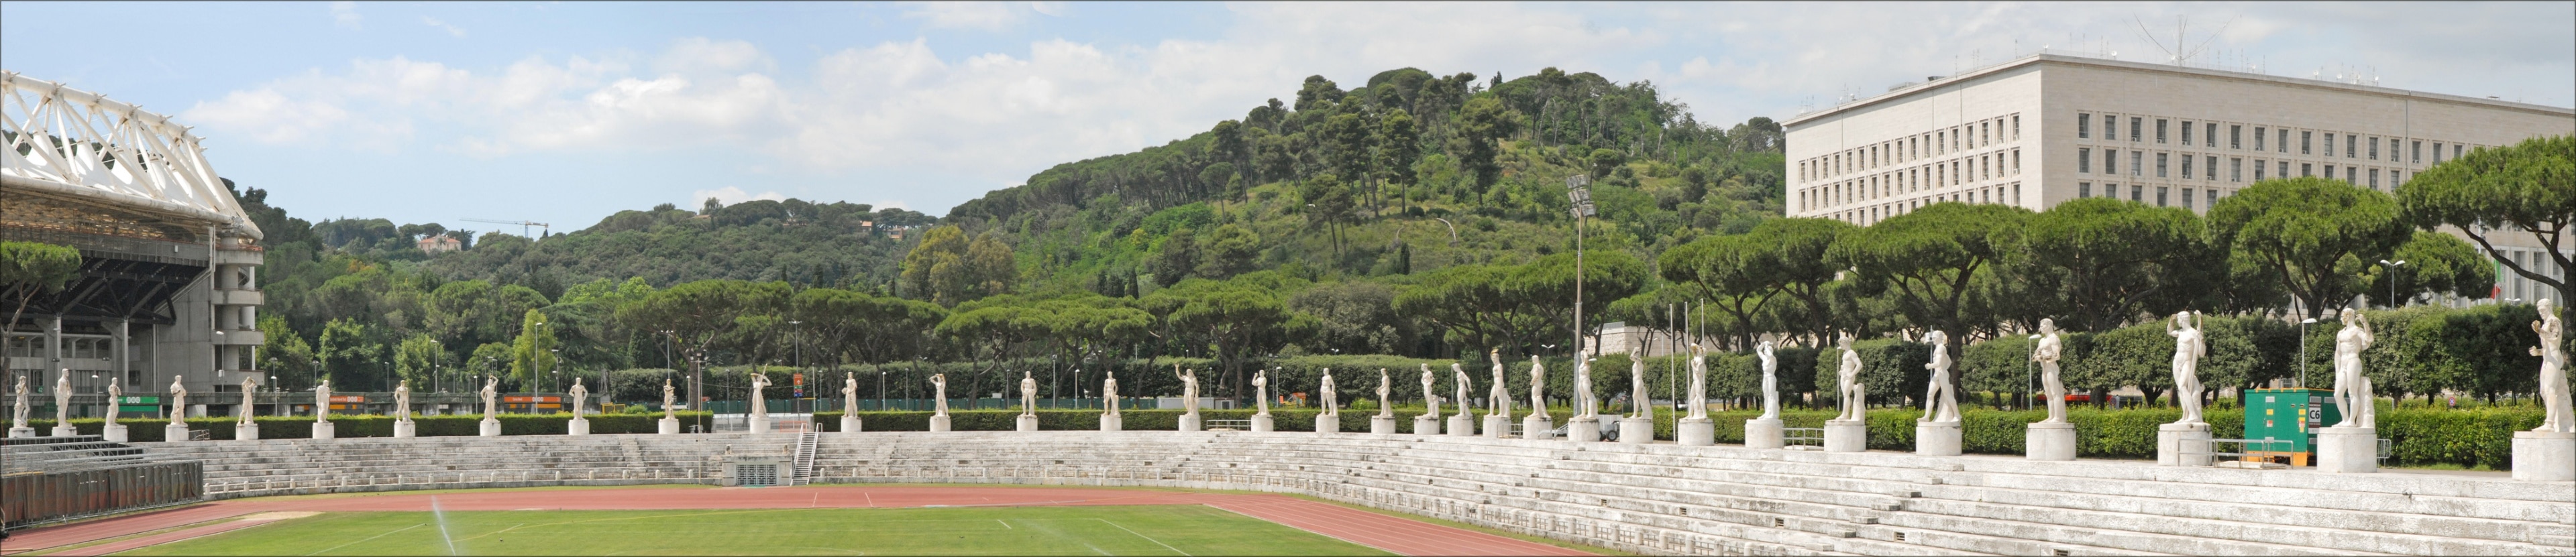 Le stade des marbres (Photo panoramique) A gauche, le stade olympique ____________ Le Foro Italico, appelé dans les années 30, Foro Mussolini, est un grand ensemble de bâtiments et d'équipements sportifs. Sa construction a débuté à l'époque fasciste sous la direction de l'architecte Enrico Del Dubbio. Le Foro a été inauguré en 1932. A l'entrée, un obélisque en marbre dédié à Mussolini a été érigé. Le stade des marbres est l'équipement le plus célèbre avec ses 60 statues d'athlètes à l'antique, placées au-dessus des gradins et offertes par les villes et provinces d'Italie. A l'entrée, se trouvait l'Académie d"éducation physique, constituée de deux corps de bâtiments rouges, symétriques et reliés par une loggia. Les locaux sont occupés aujourd'hui par le comité olympique italien. A proximité, un stade olympique a été construit pour les jeux de 1960 puis agrandi pour la coupe du monde de 1990.